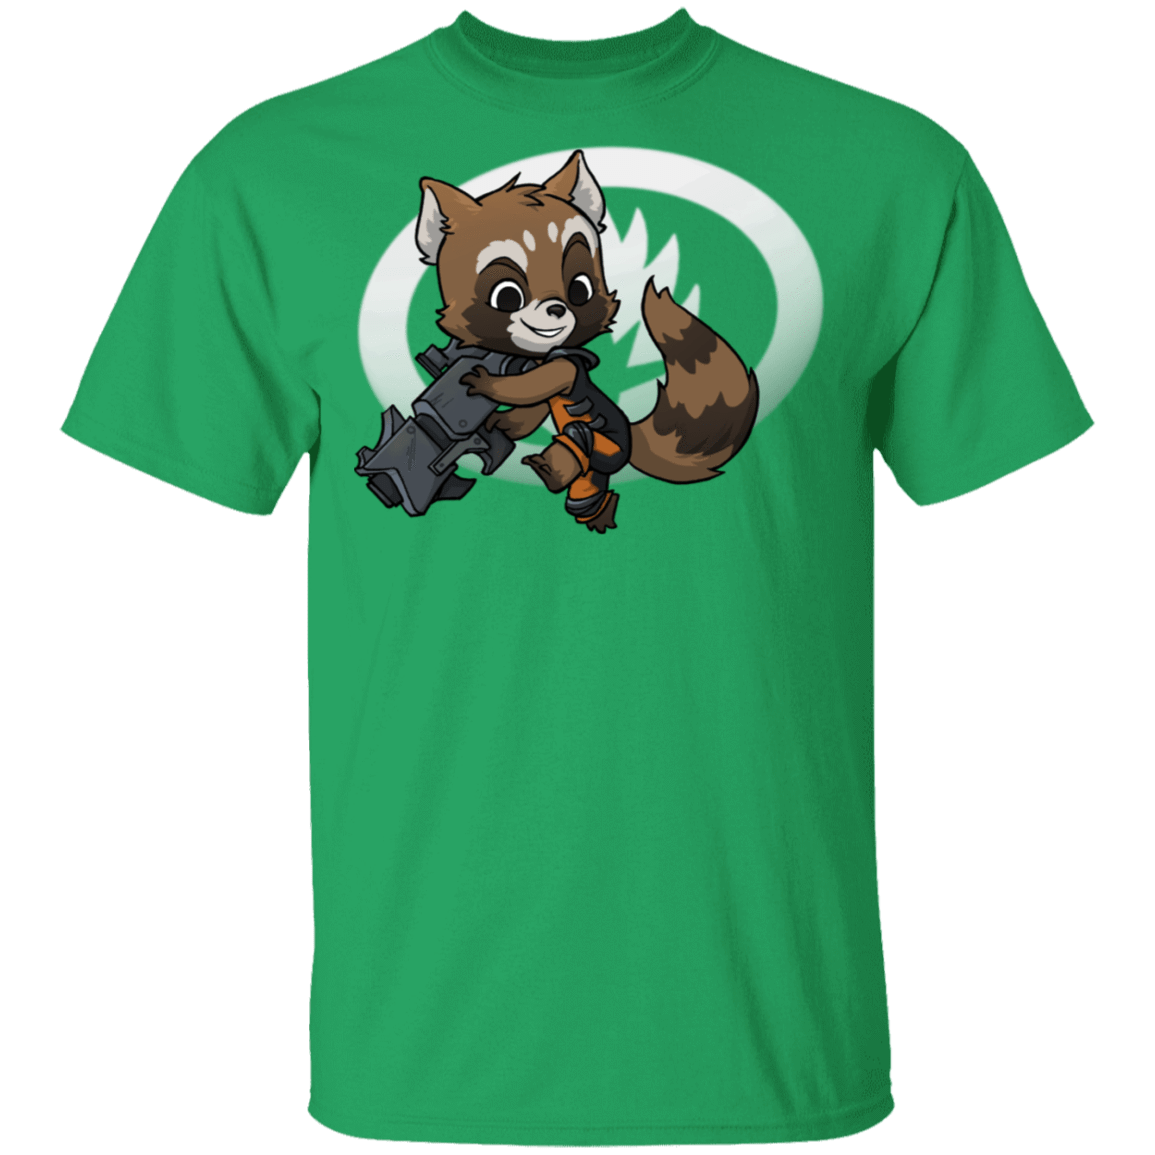 T-Shirts Irish Green / S Young Hero Rocket T-Shirt